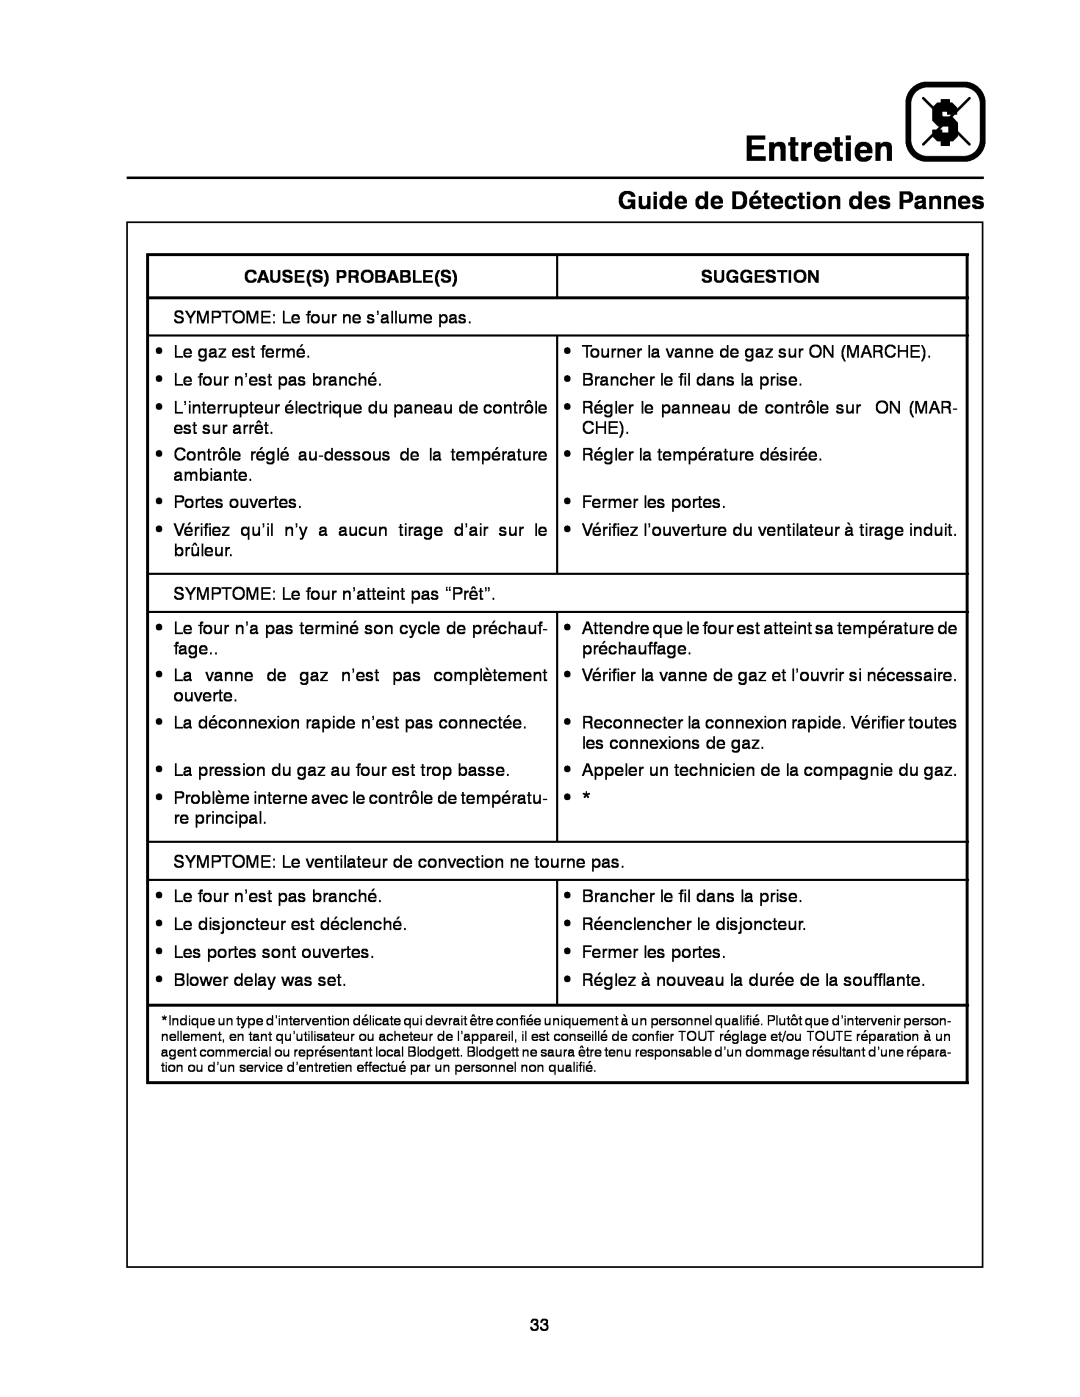 Blodgett XR8-G manual Guide de Détection des Pannes, Entretien, Causes Probables, Suggestion 